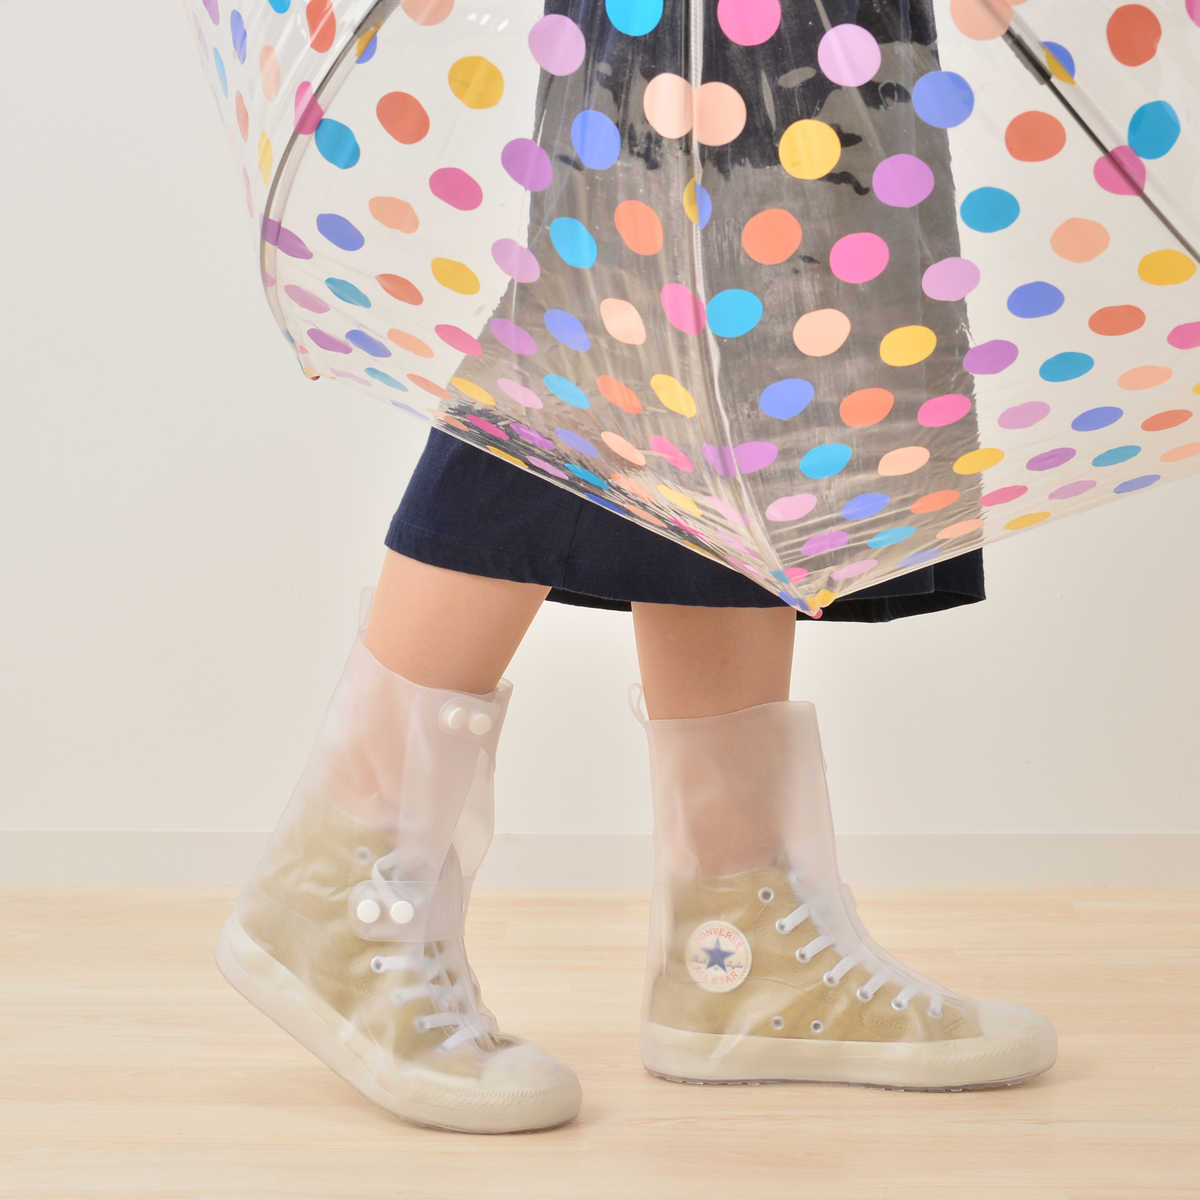 突然の雨に！靴の上から履けるレインシューズカバー - QVC.jp